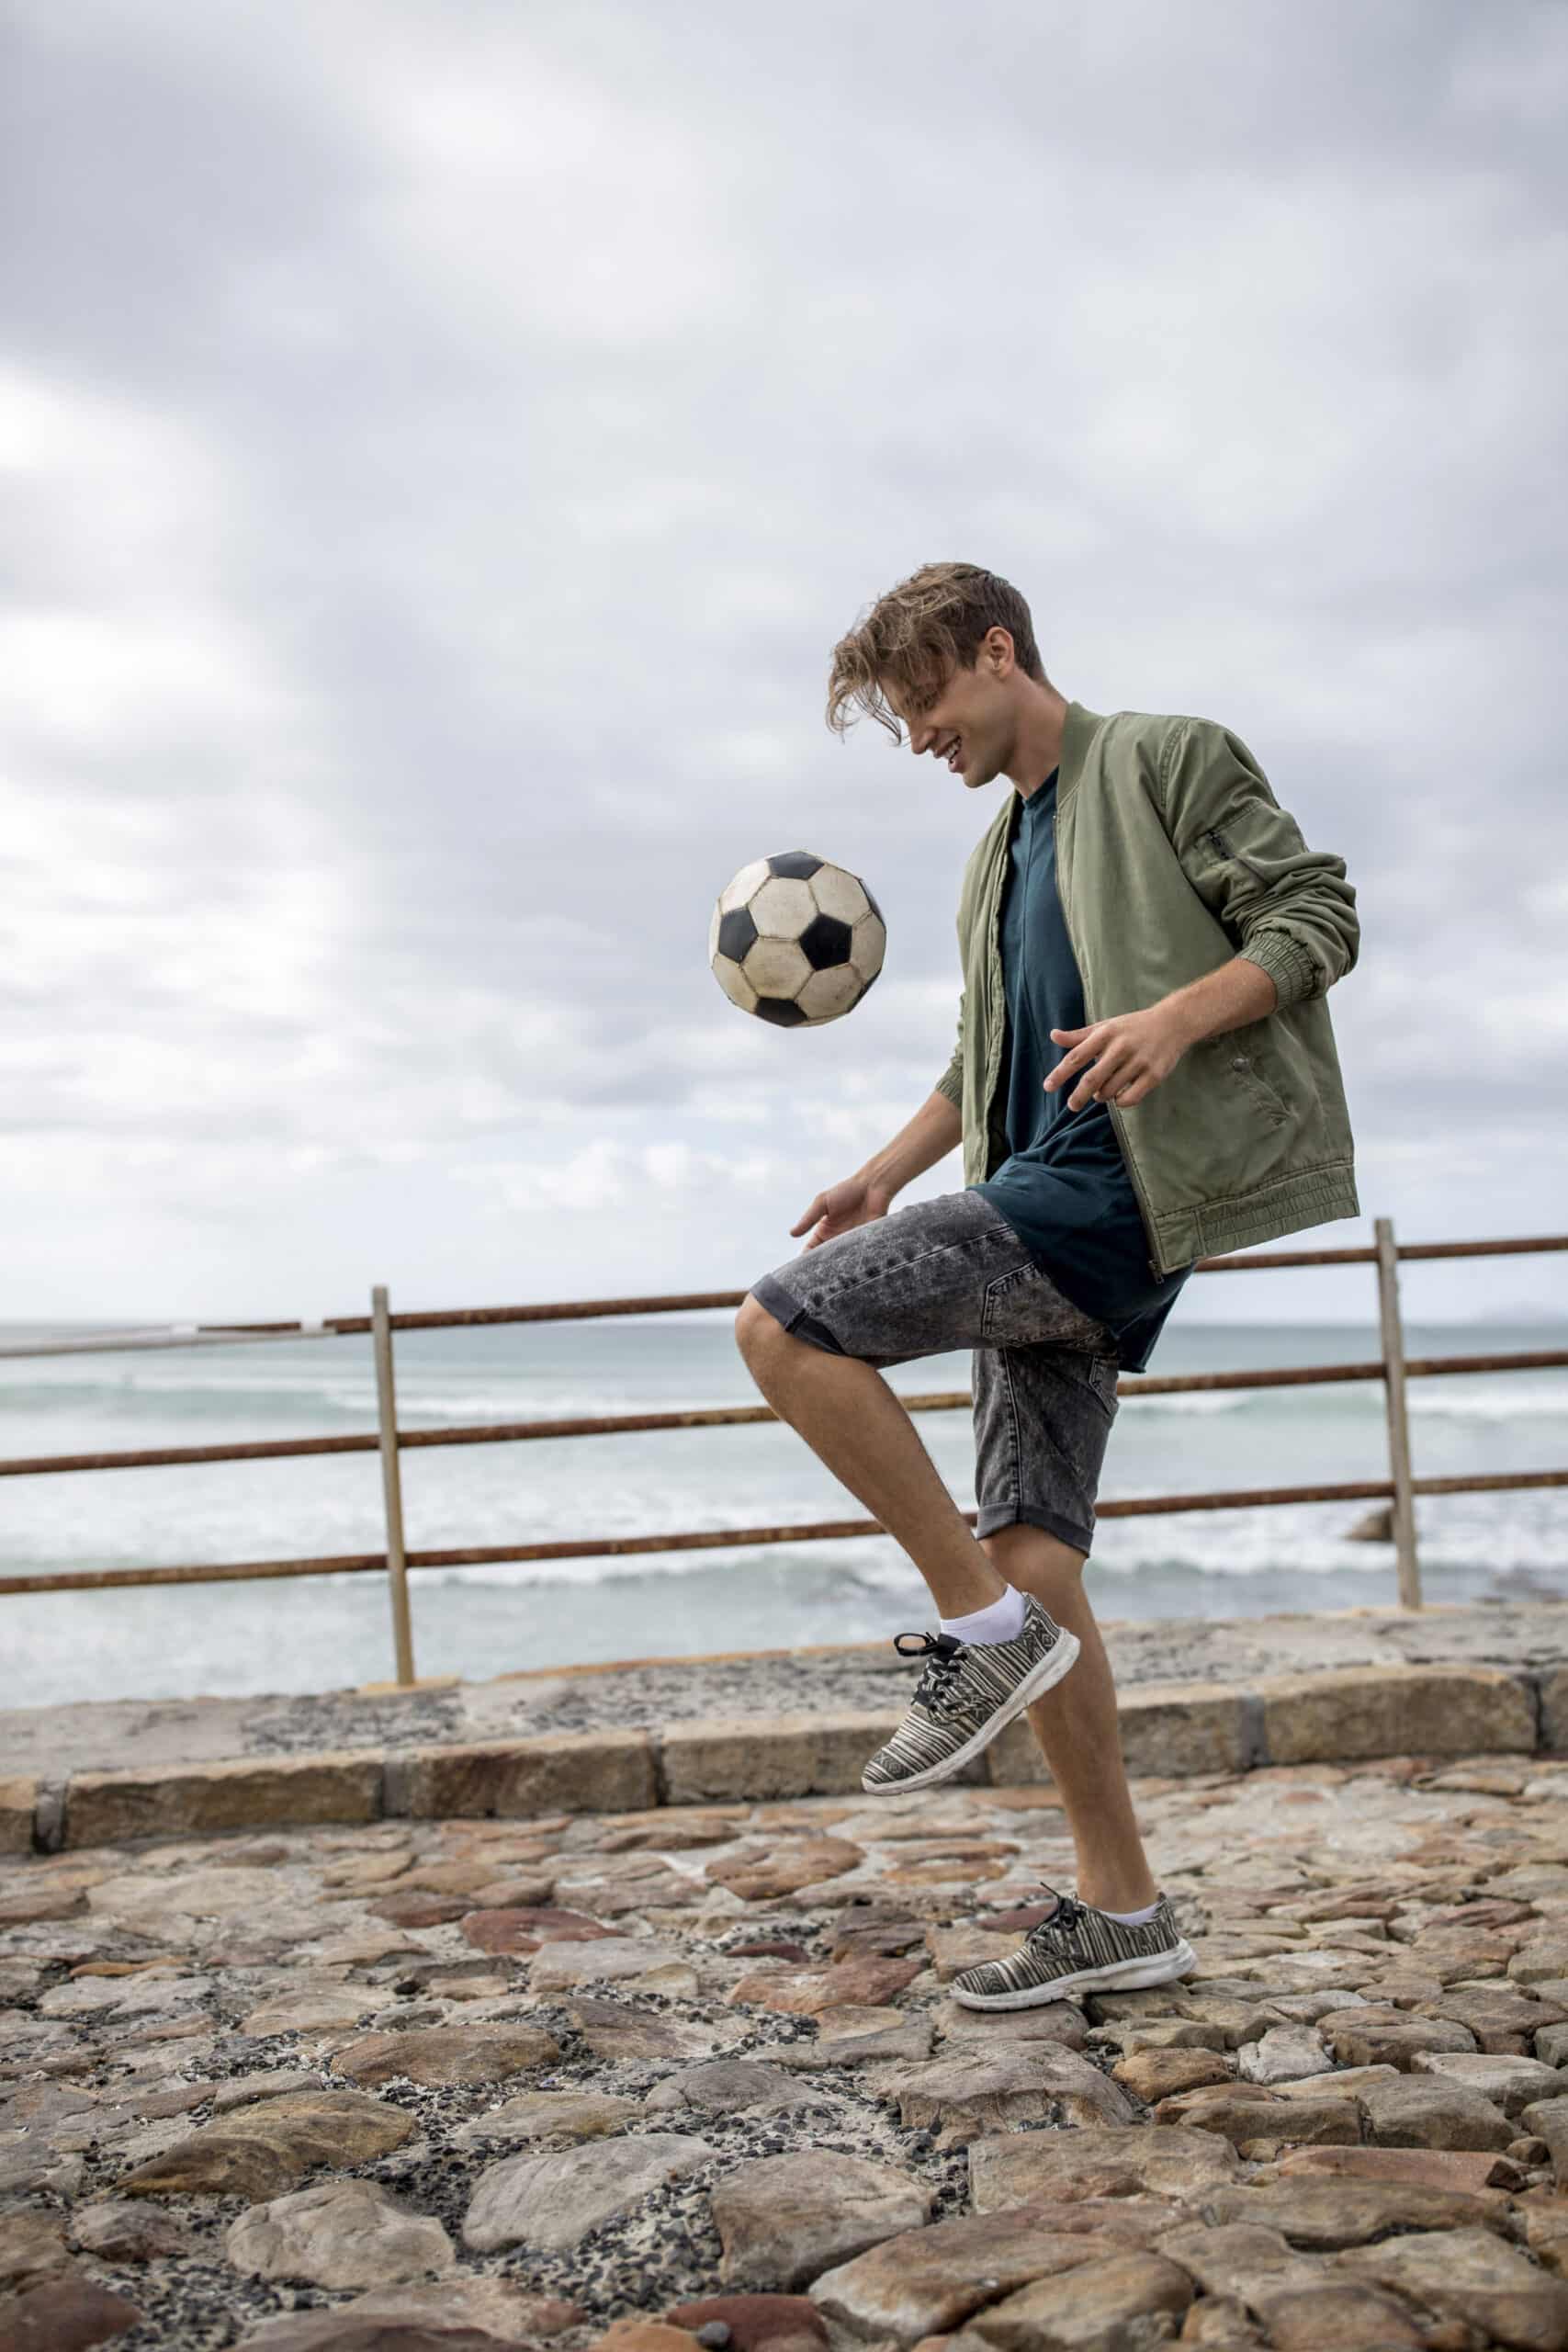 Ein junger Mann jongliert mit einem Fußball auf einem steinigen Strandweg in der Nähe eines Geländers, im Hintergrund das Meer und ein bewölkter Himmel. © Fotografie Tomas Rodriguez